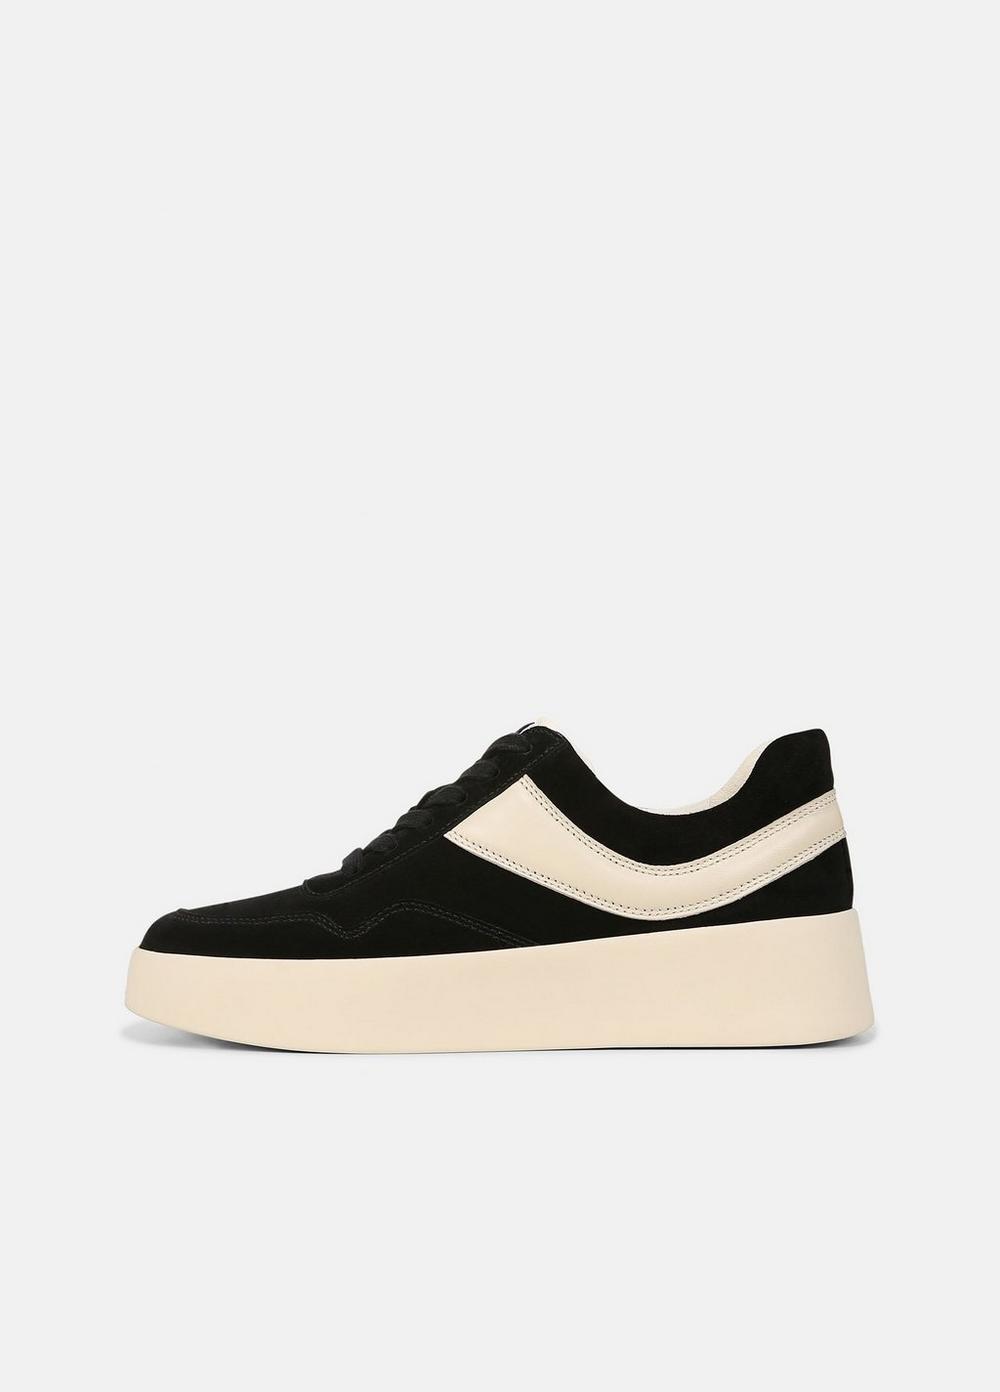 Warren Court Leather Sneaker, Black, Size 5.5 Vince